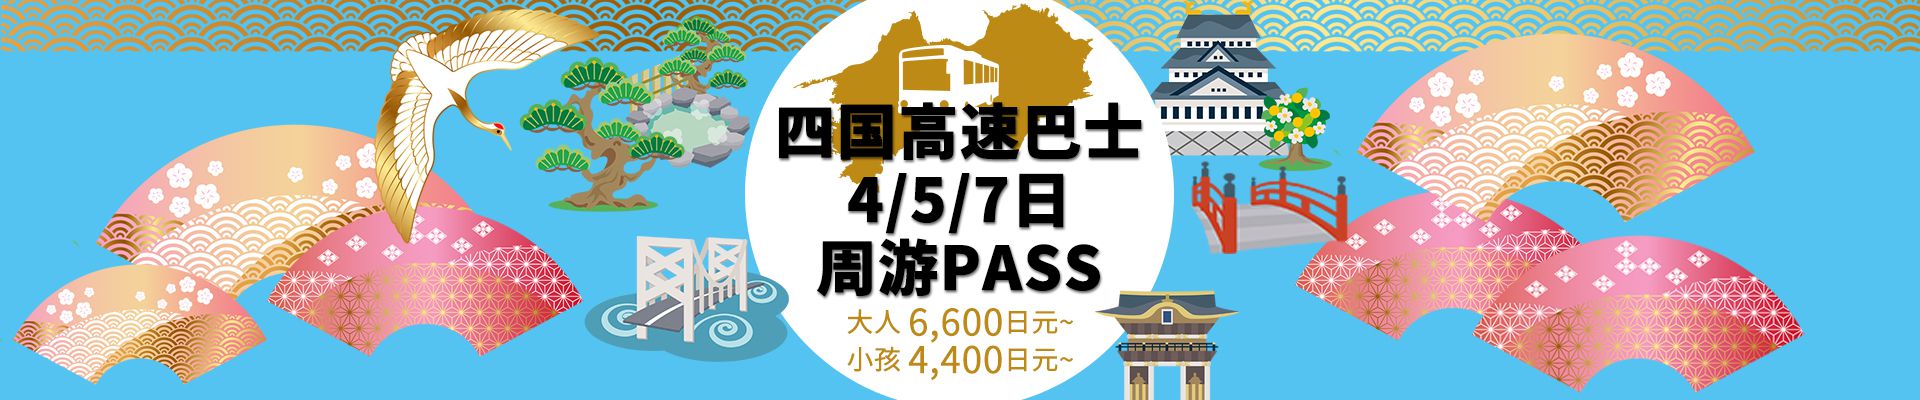 四国高速巴士 4/5/7日周游PASS